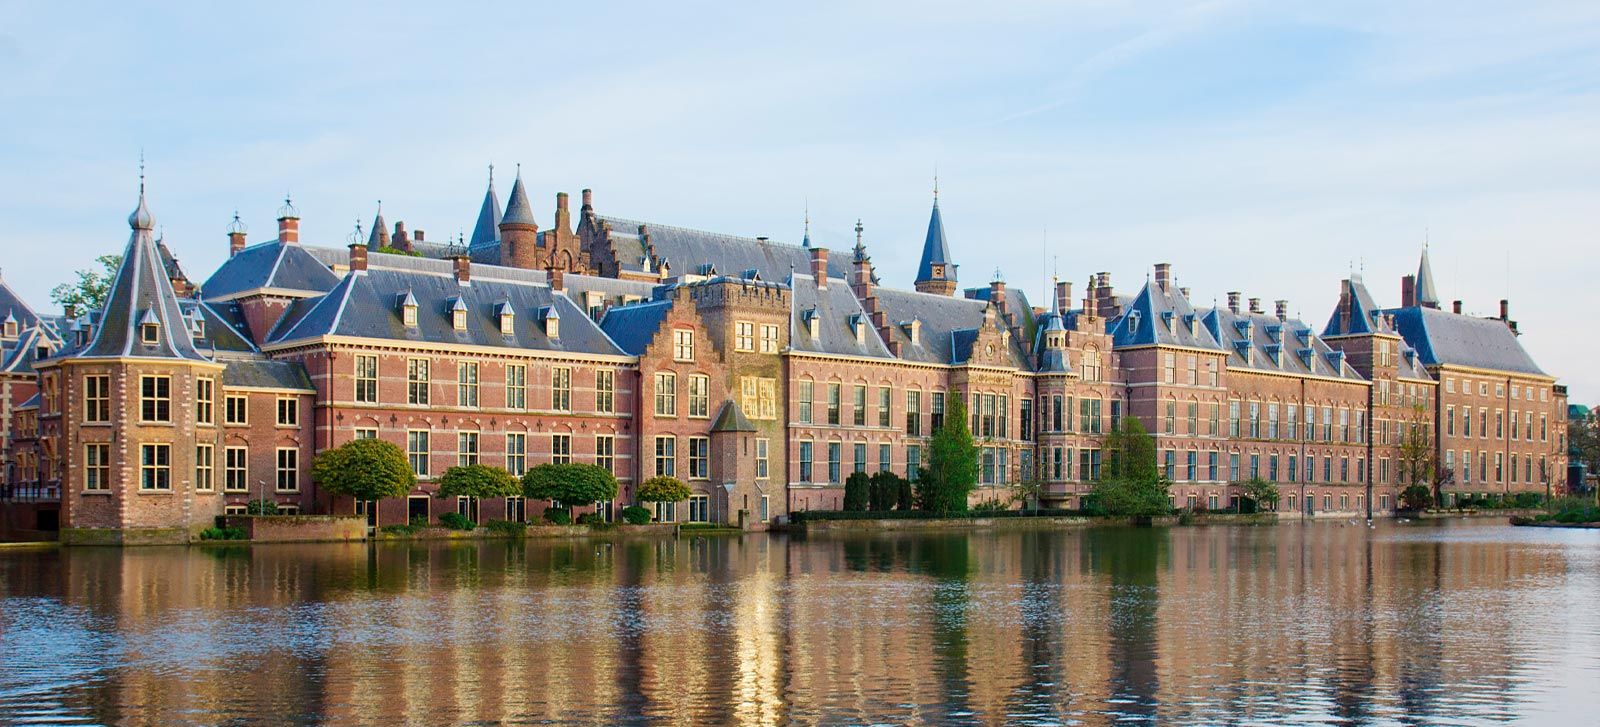 Замок Бинненхоф в Гааге, Нидерланды